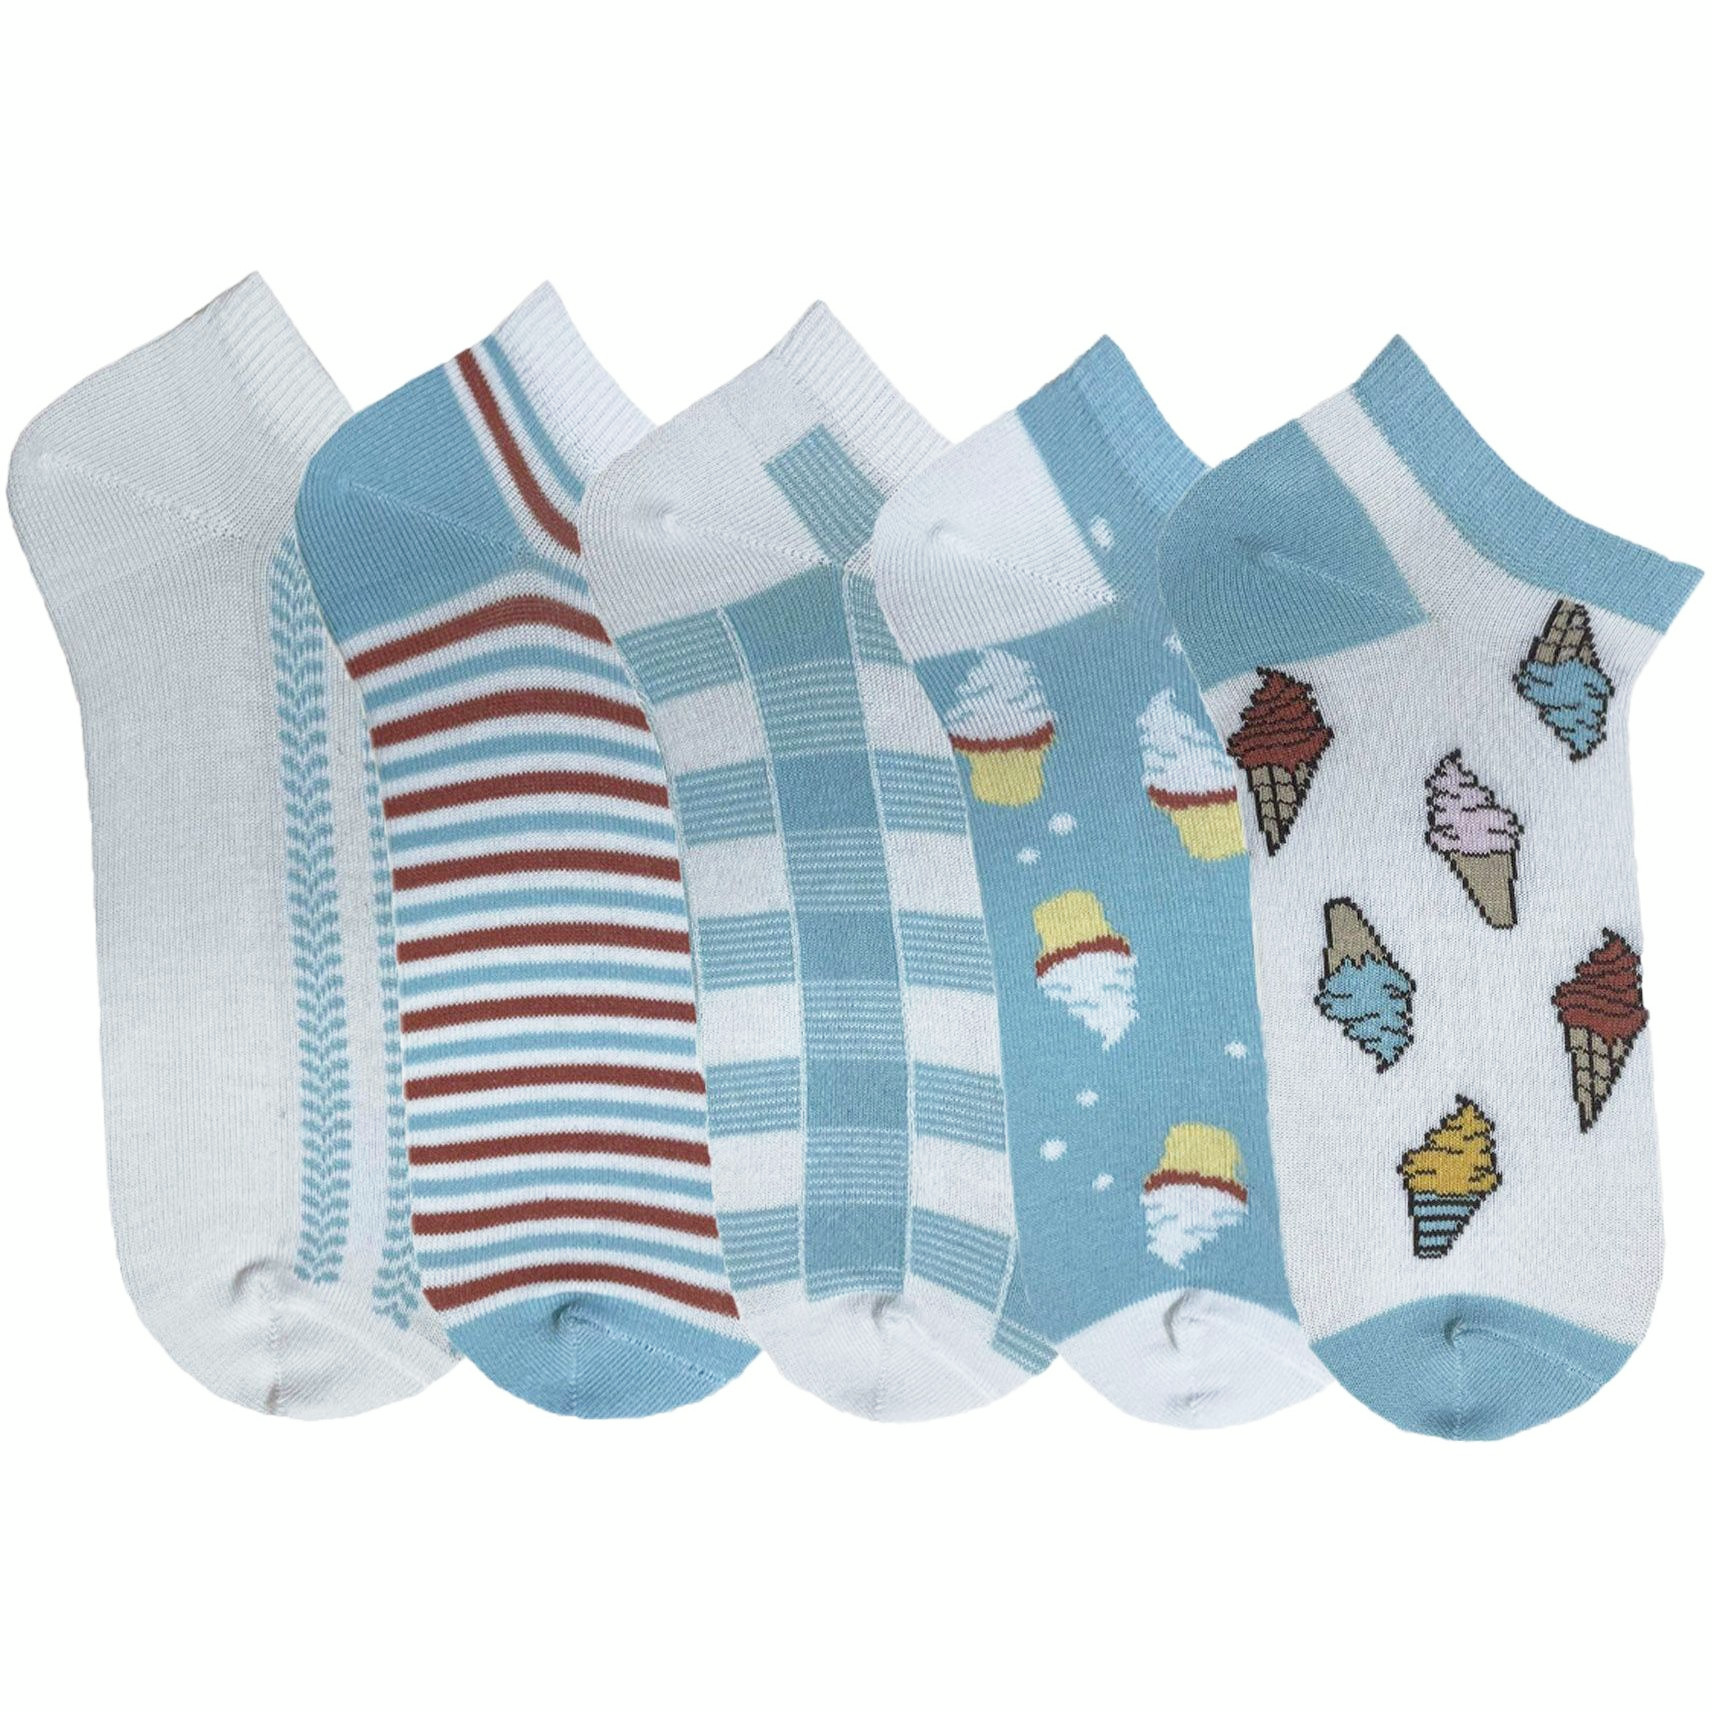 Набір жіночих шкарпеток Premier Socks 36-40 5 пар блакитні з принтом (4820163319346)фото1